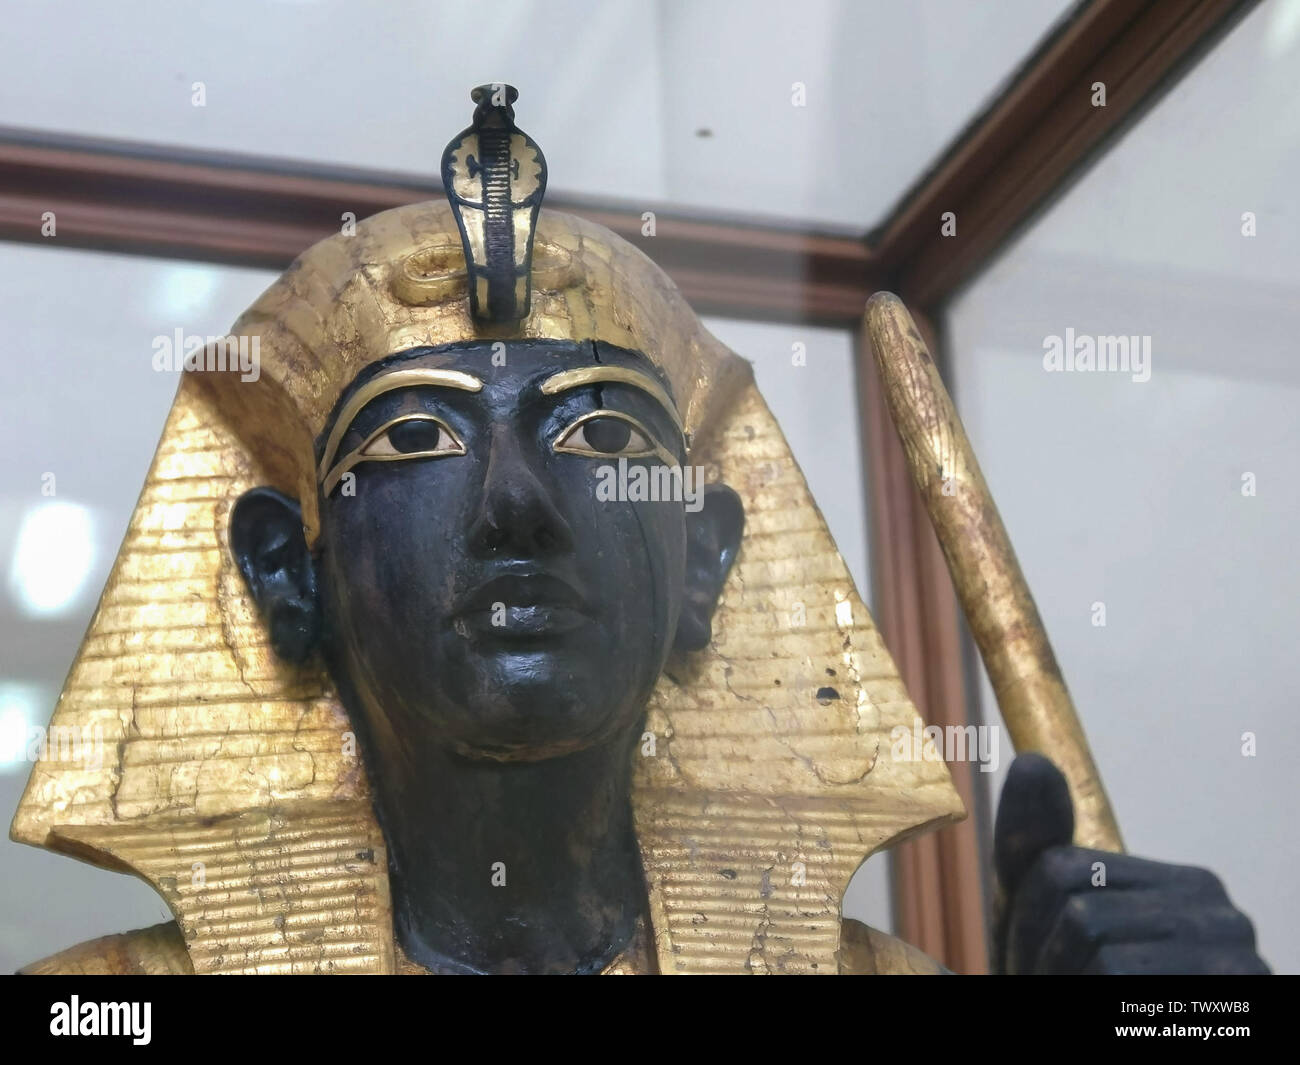 Le Caire, Egypte- septembre, 26, 2016 : statue de Toutânkhamon dans le musée égyptien du Caire Banque D'Images